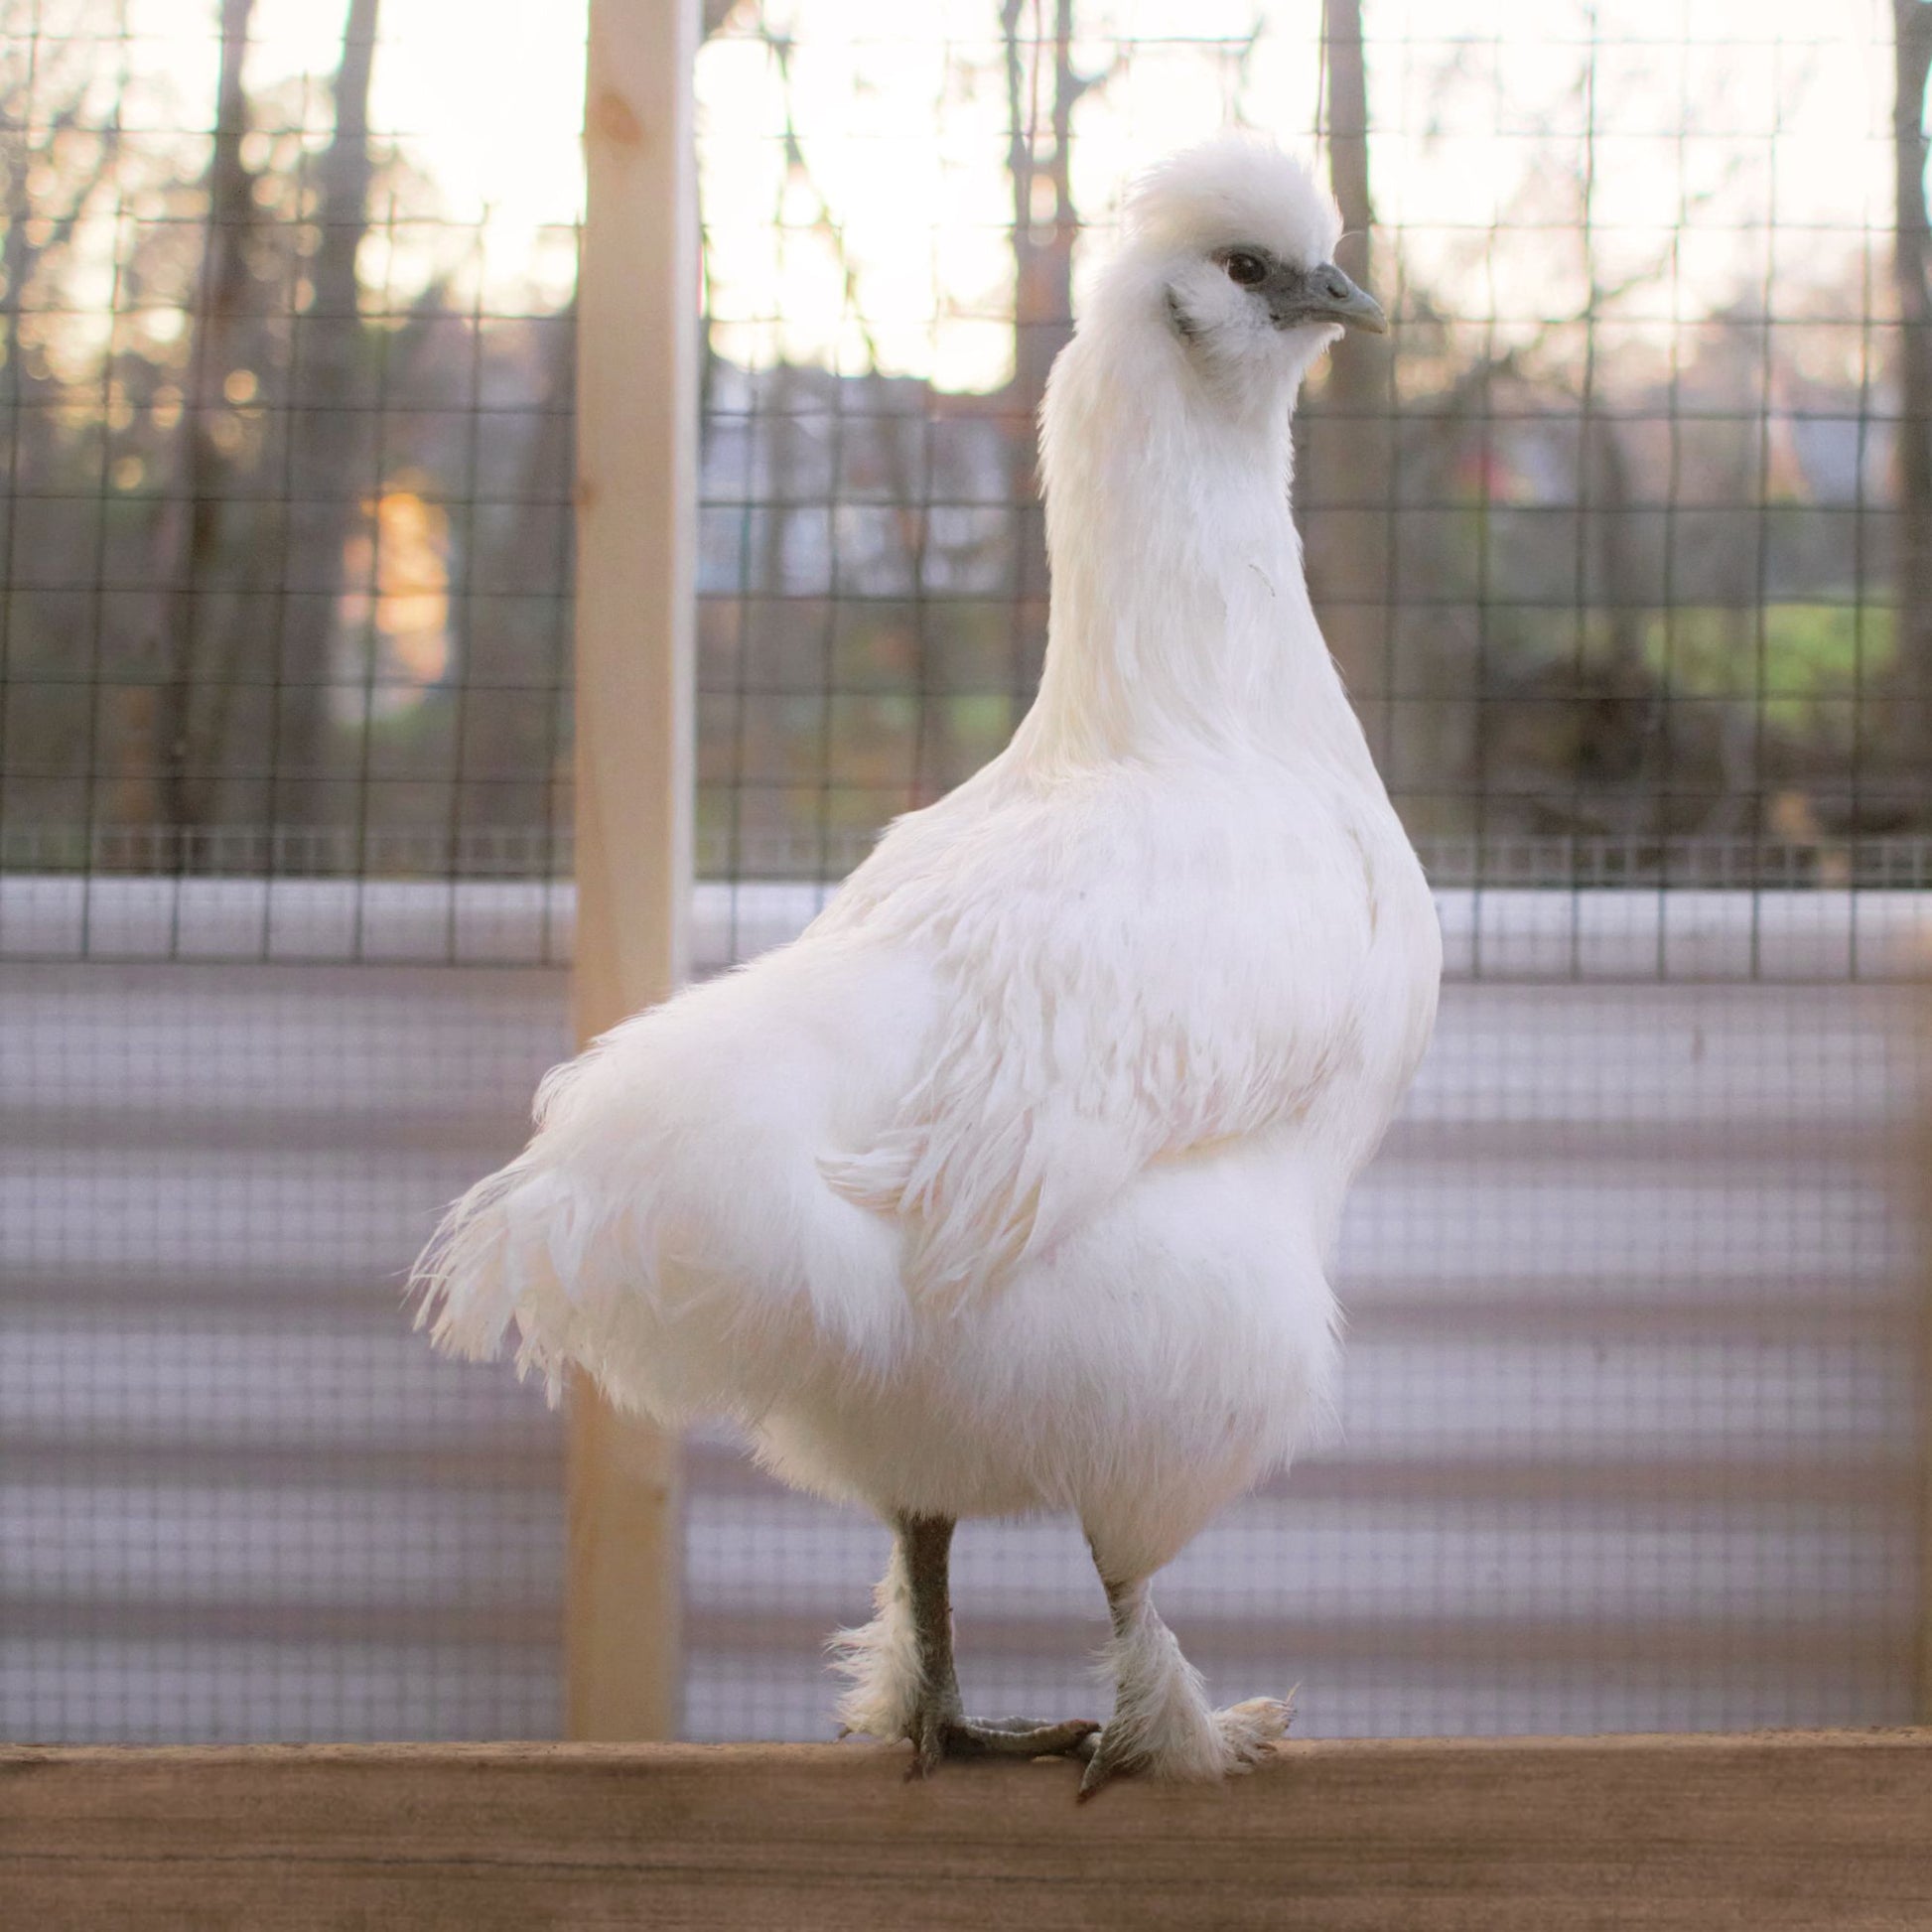 Silked White Easter Egger chicken breed